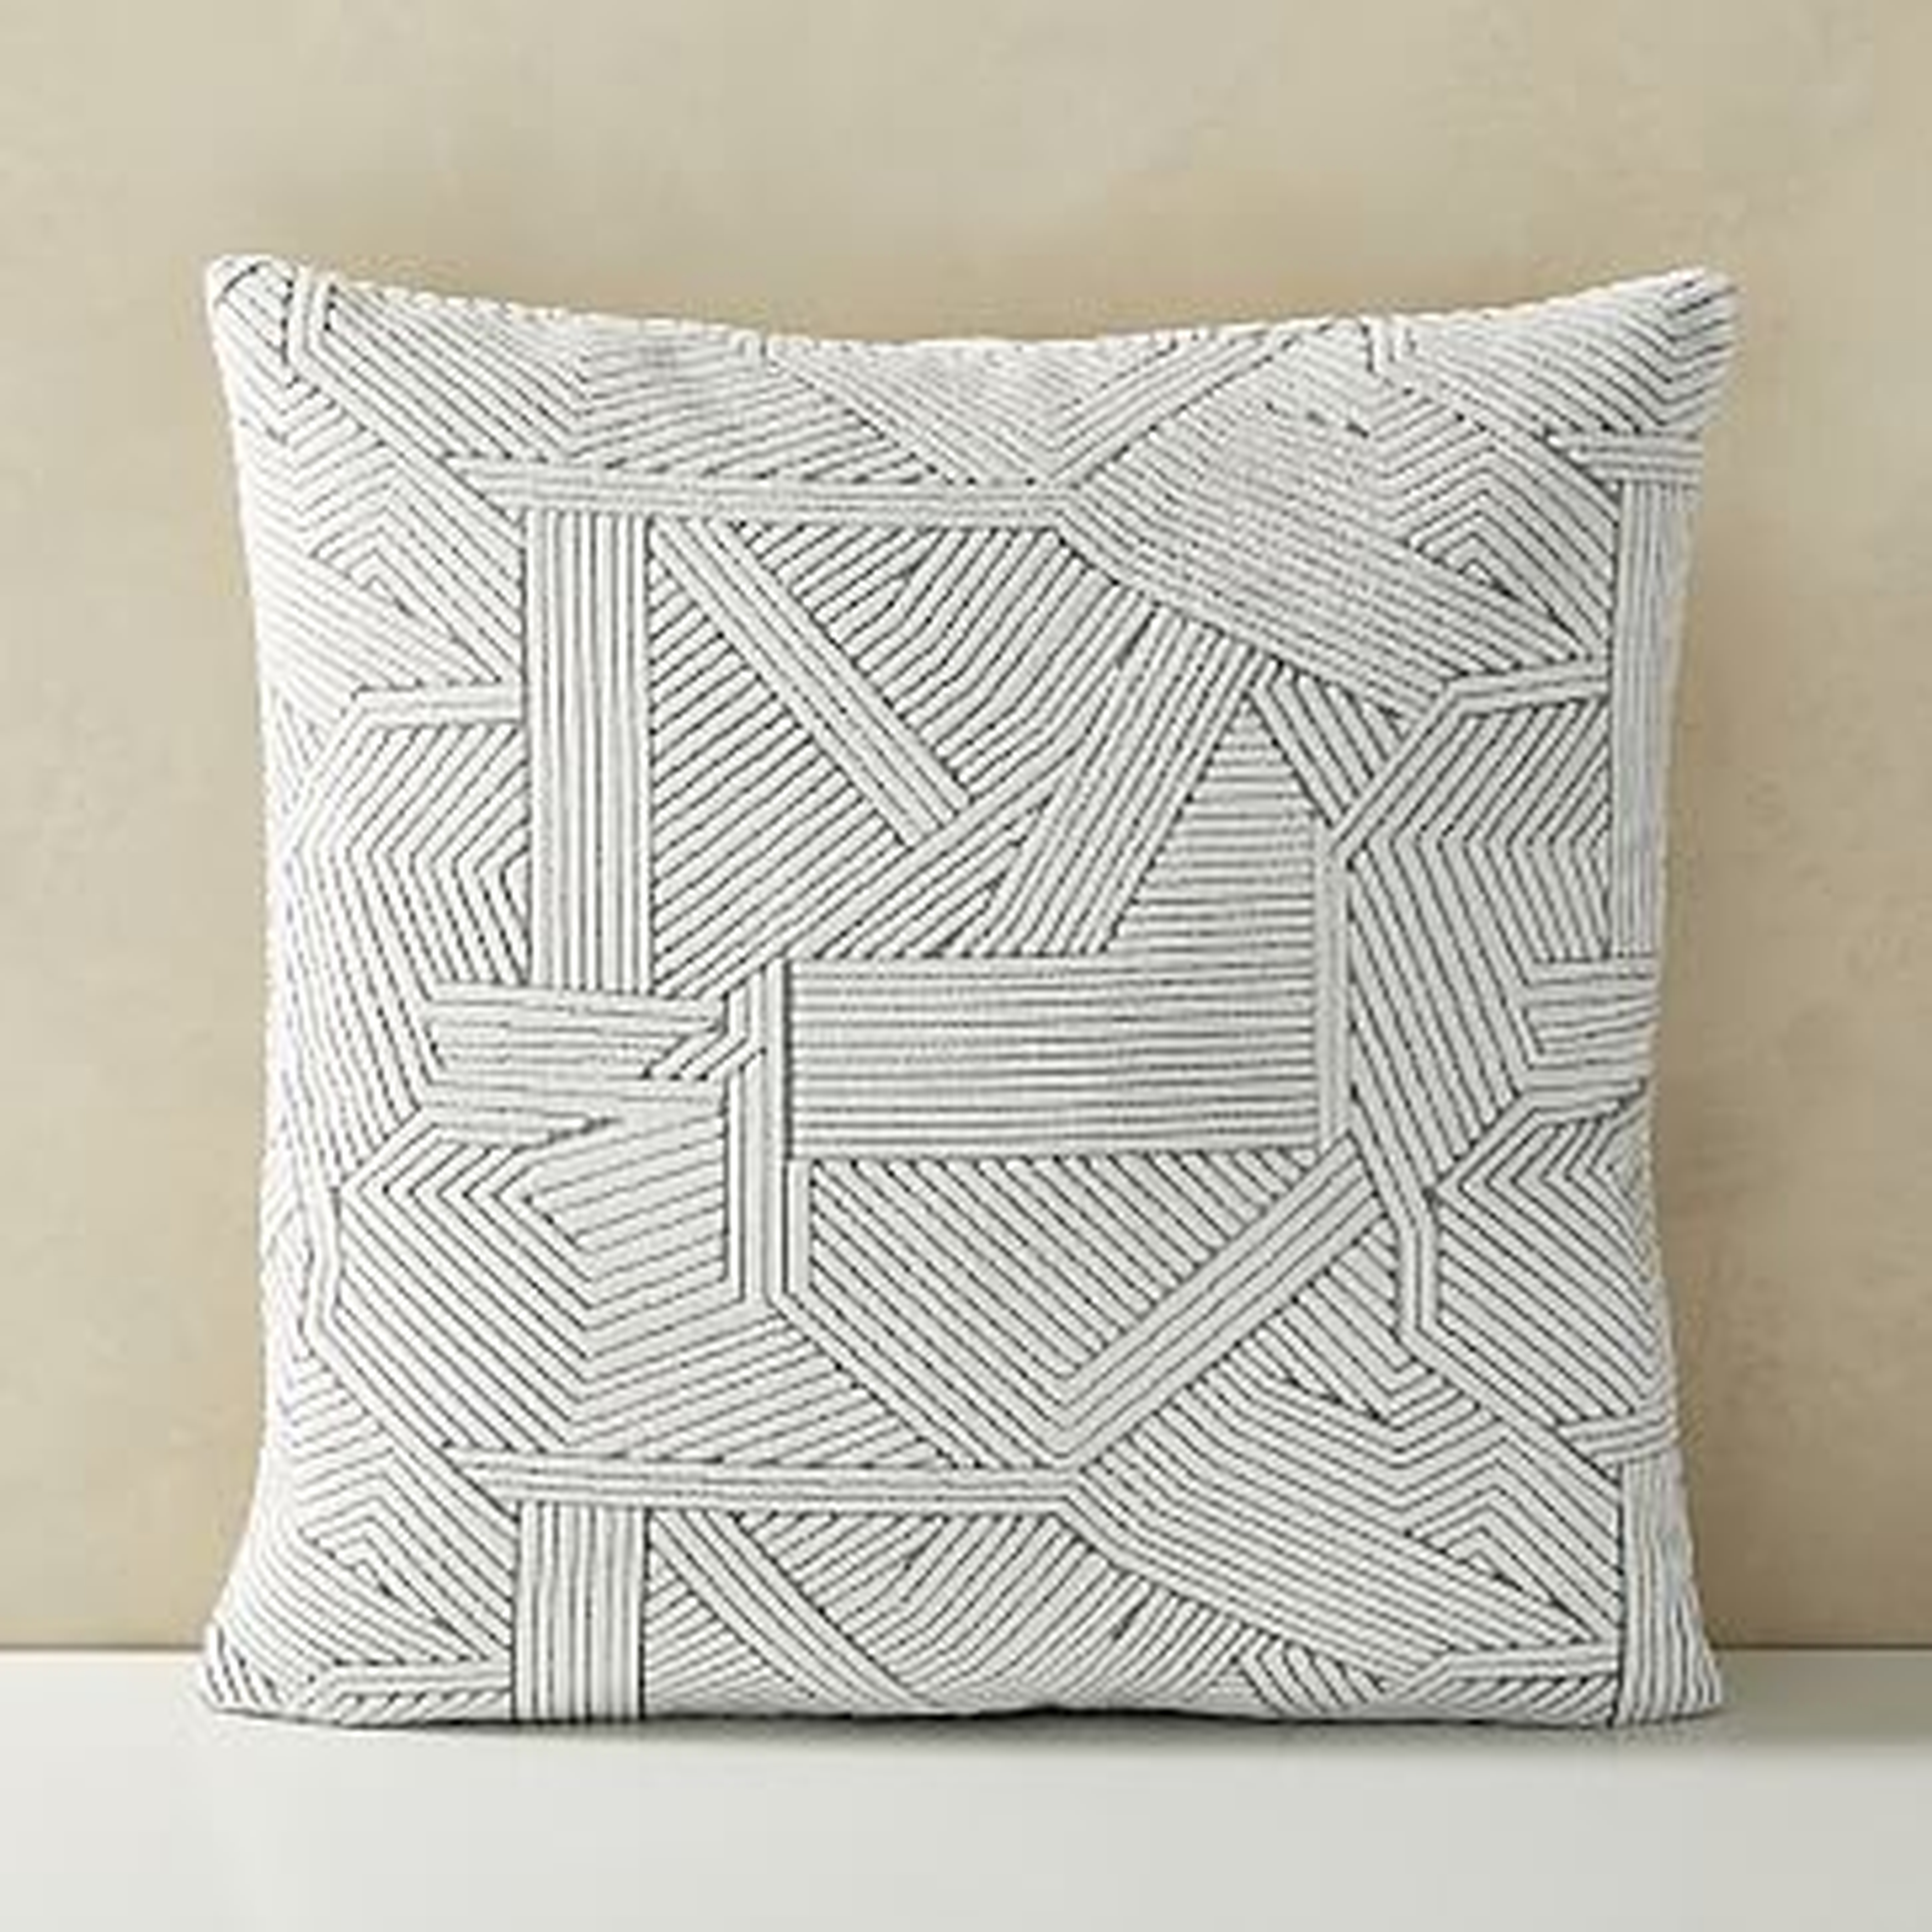 Linear Cut Velvet Pillow Cover, 20"x20", Stone White - West Elm